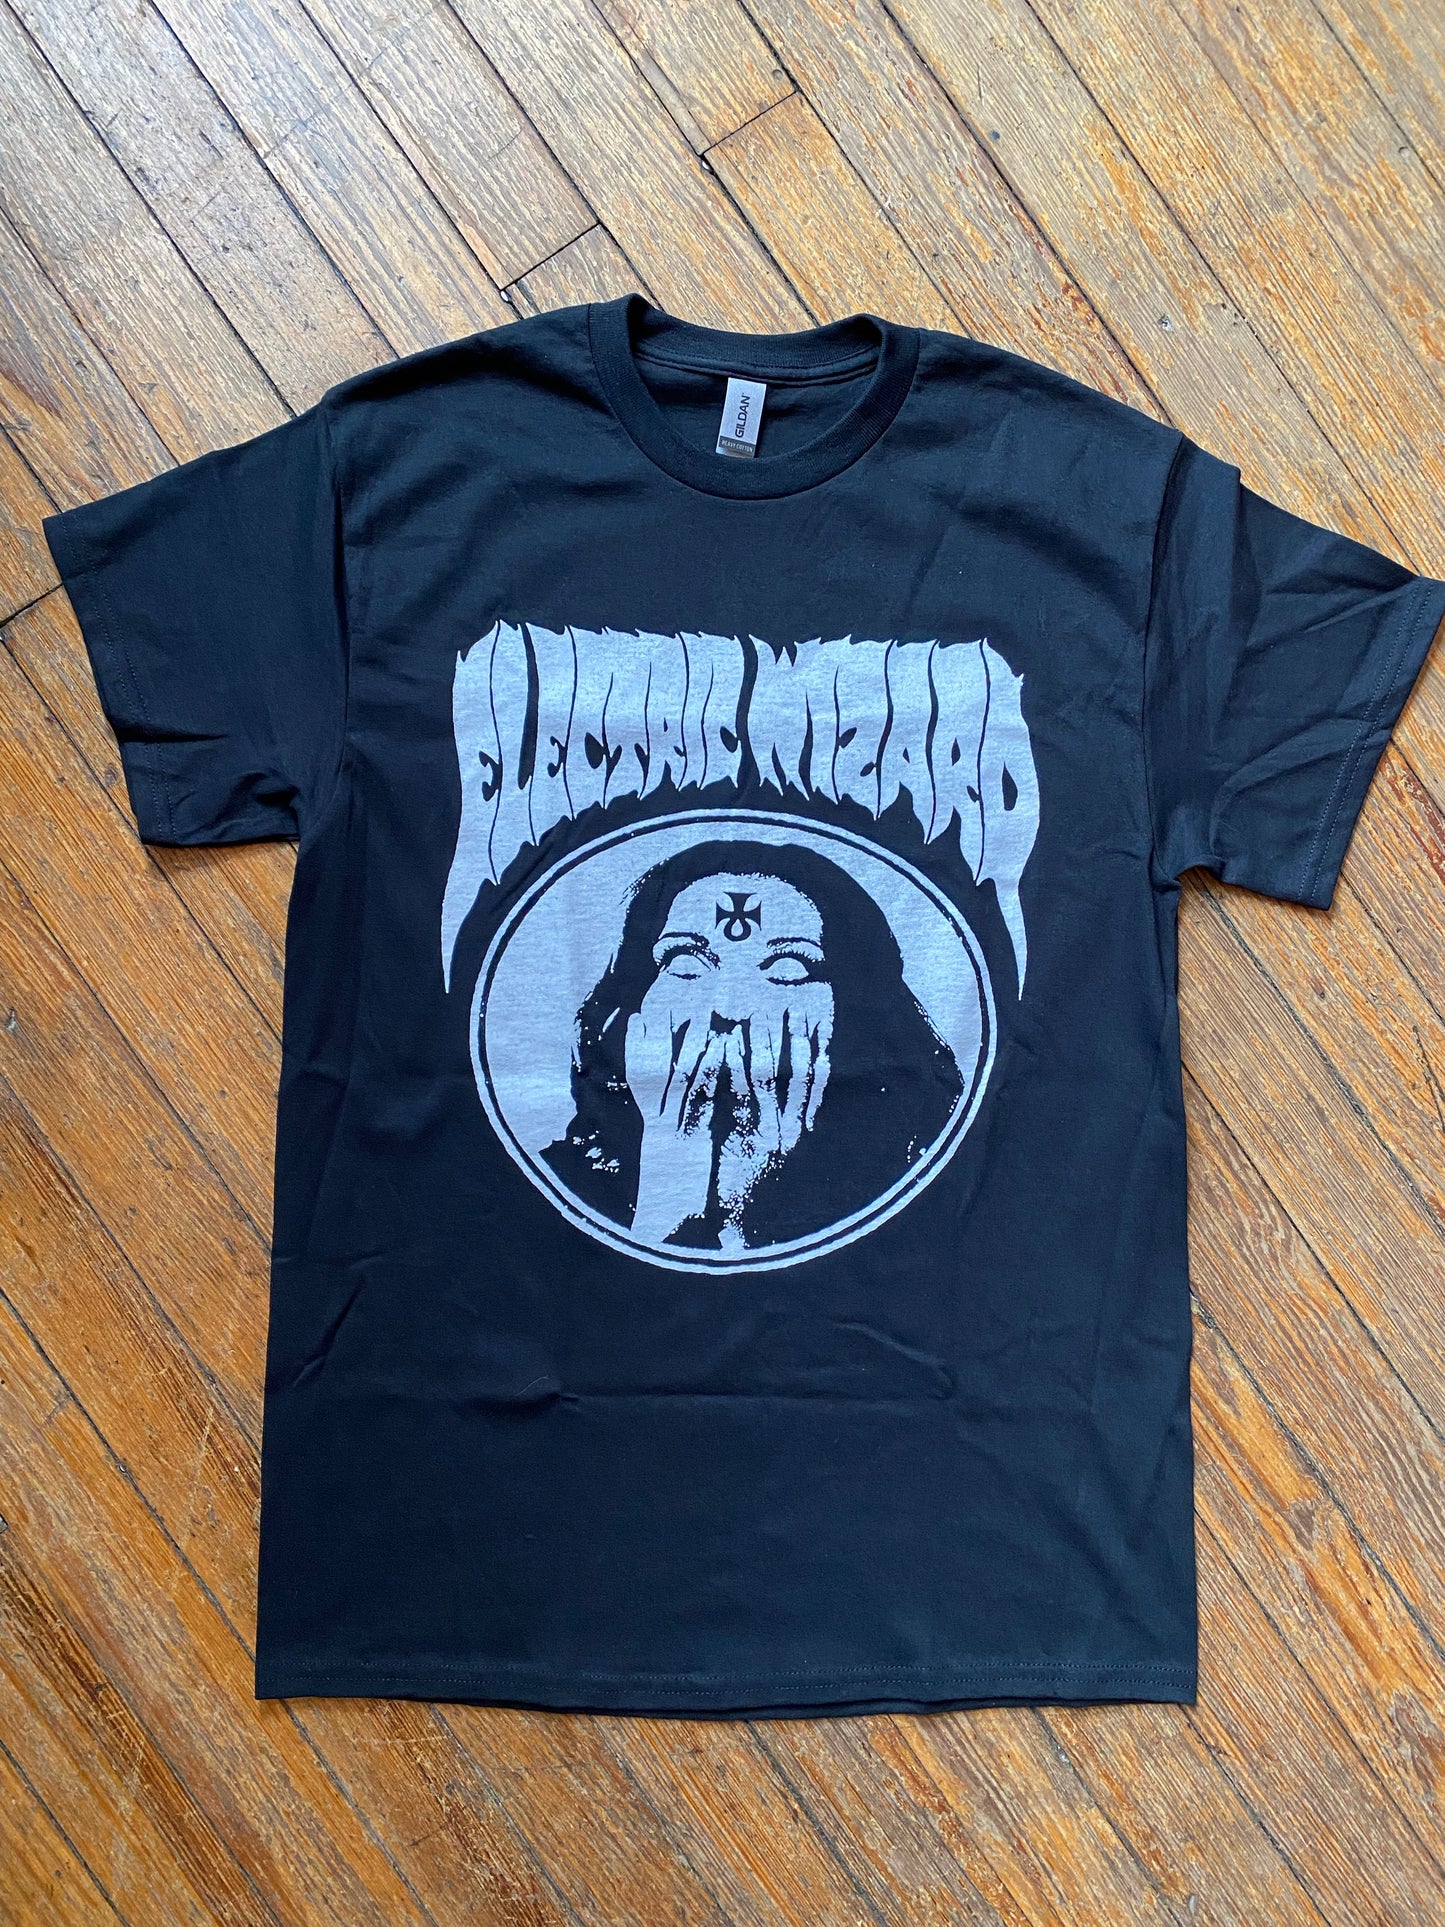 Electric Wizard Bootleg T-Shirt